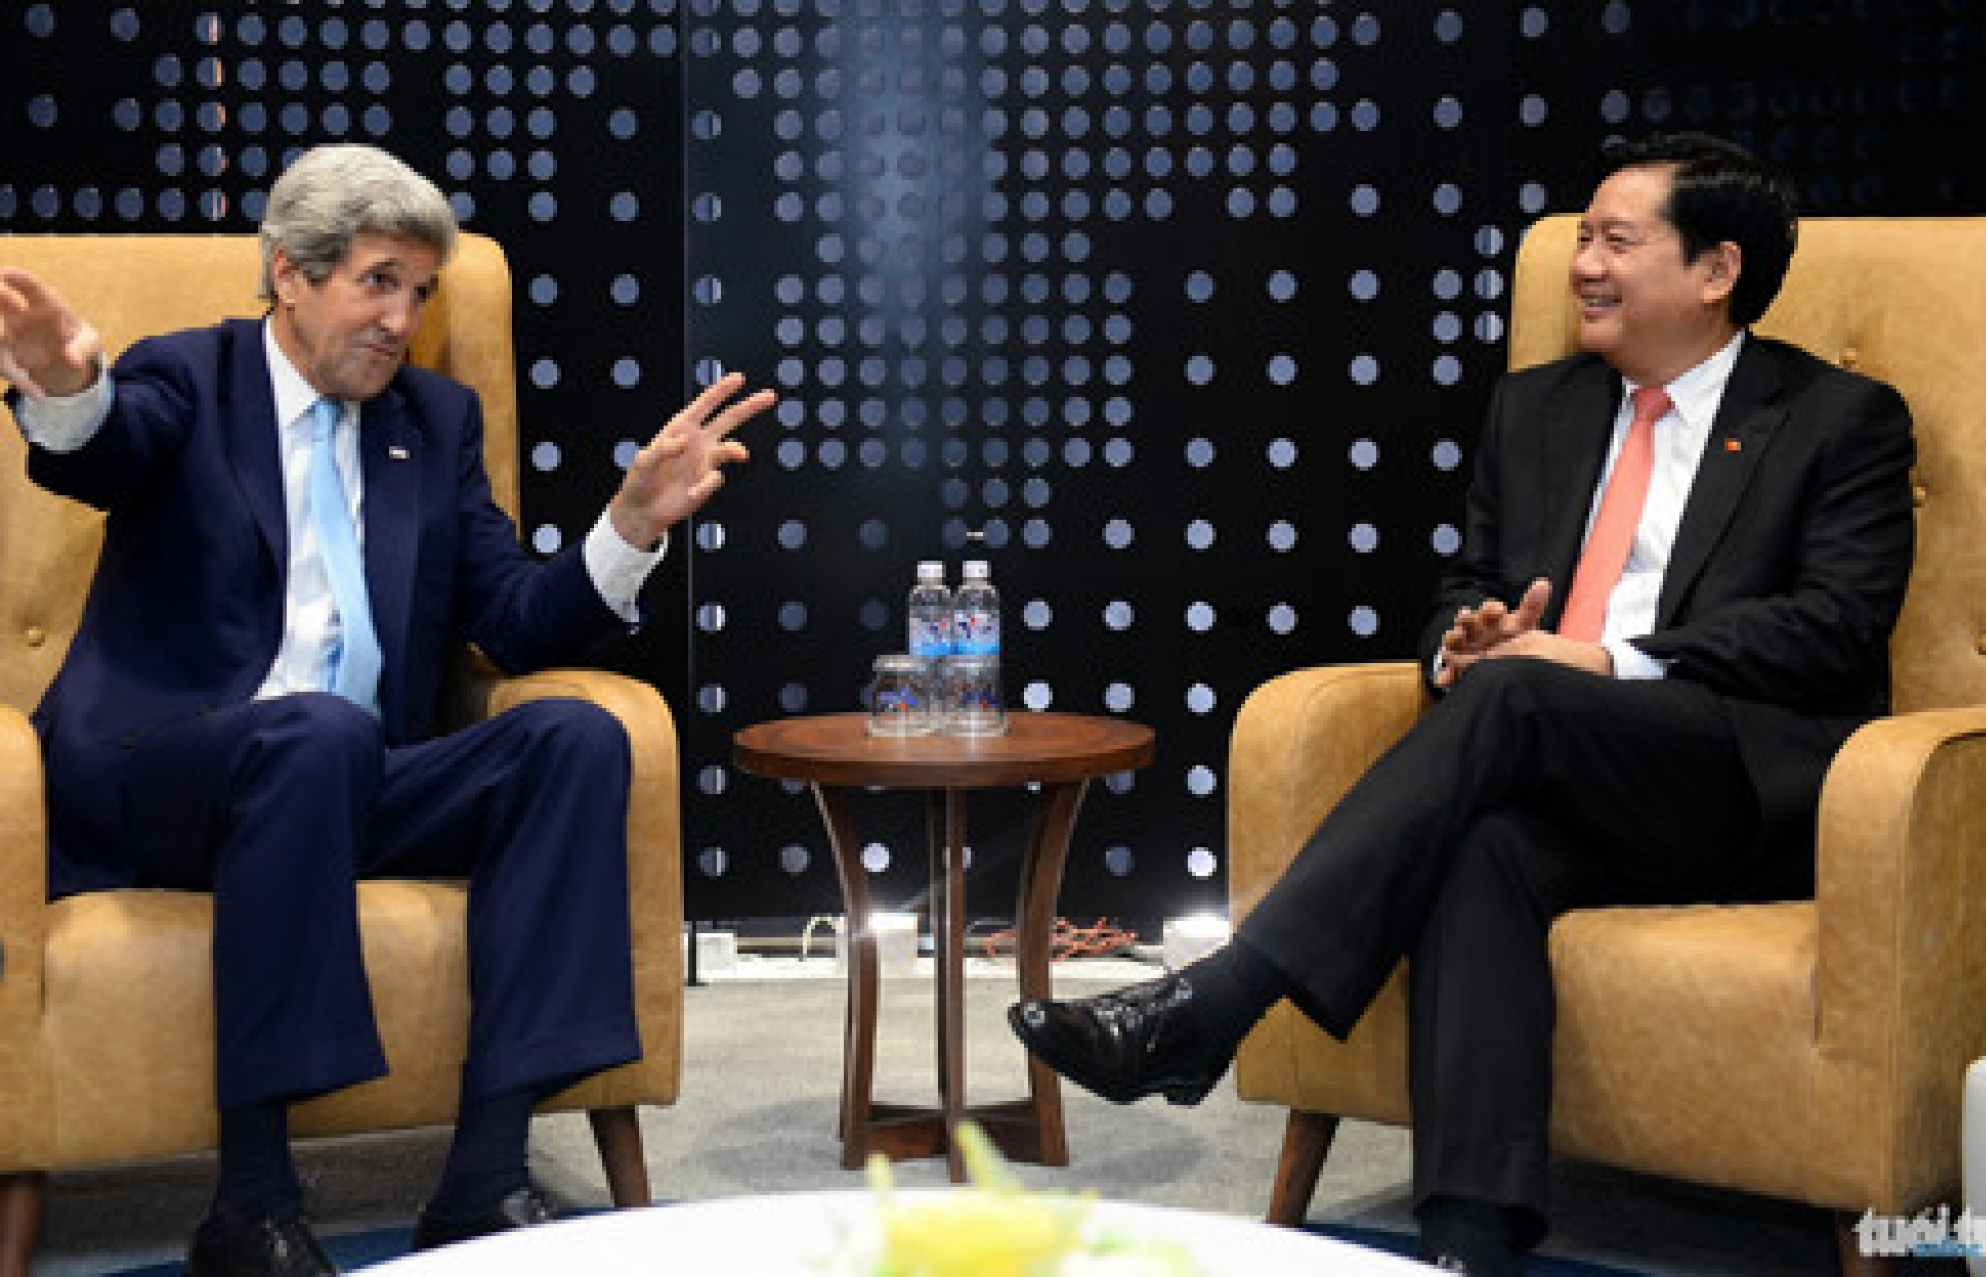 Cuộc trò chuyện thân mật giữa Bí thư Thăng và Ngoại trưởng John Kerry